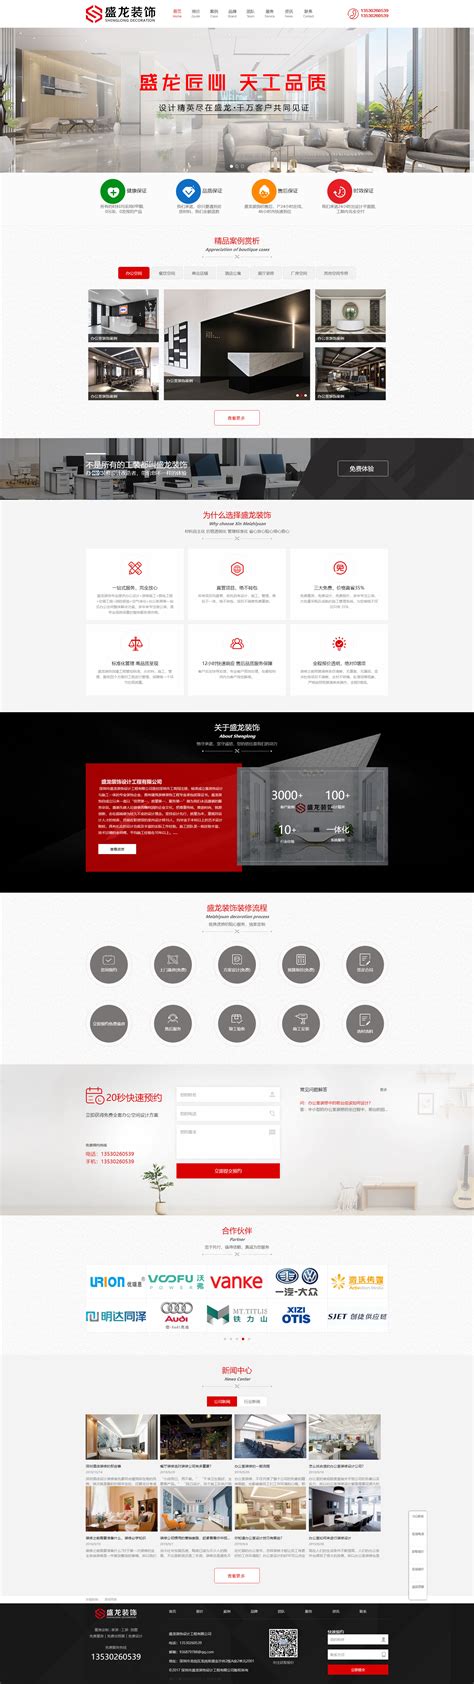 网站设计制作-深圳市盛龙装饰设计工程有限公司